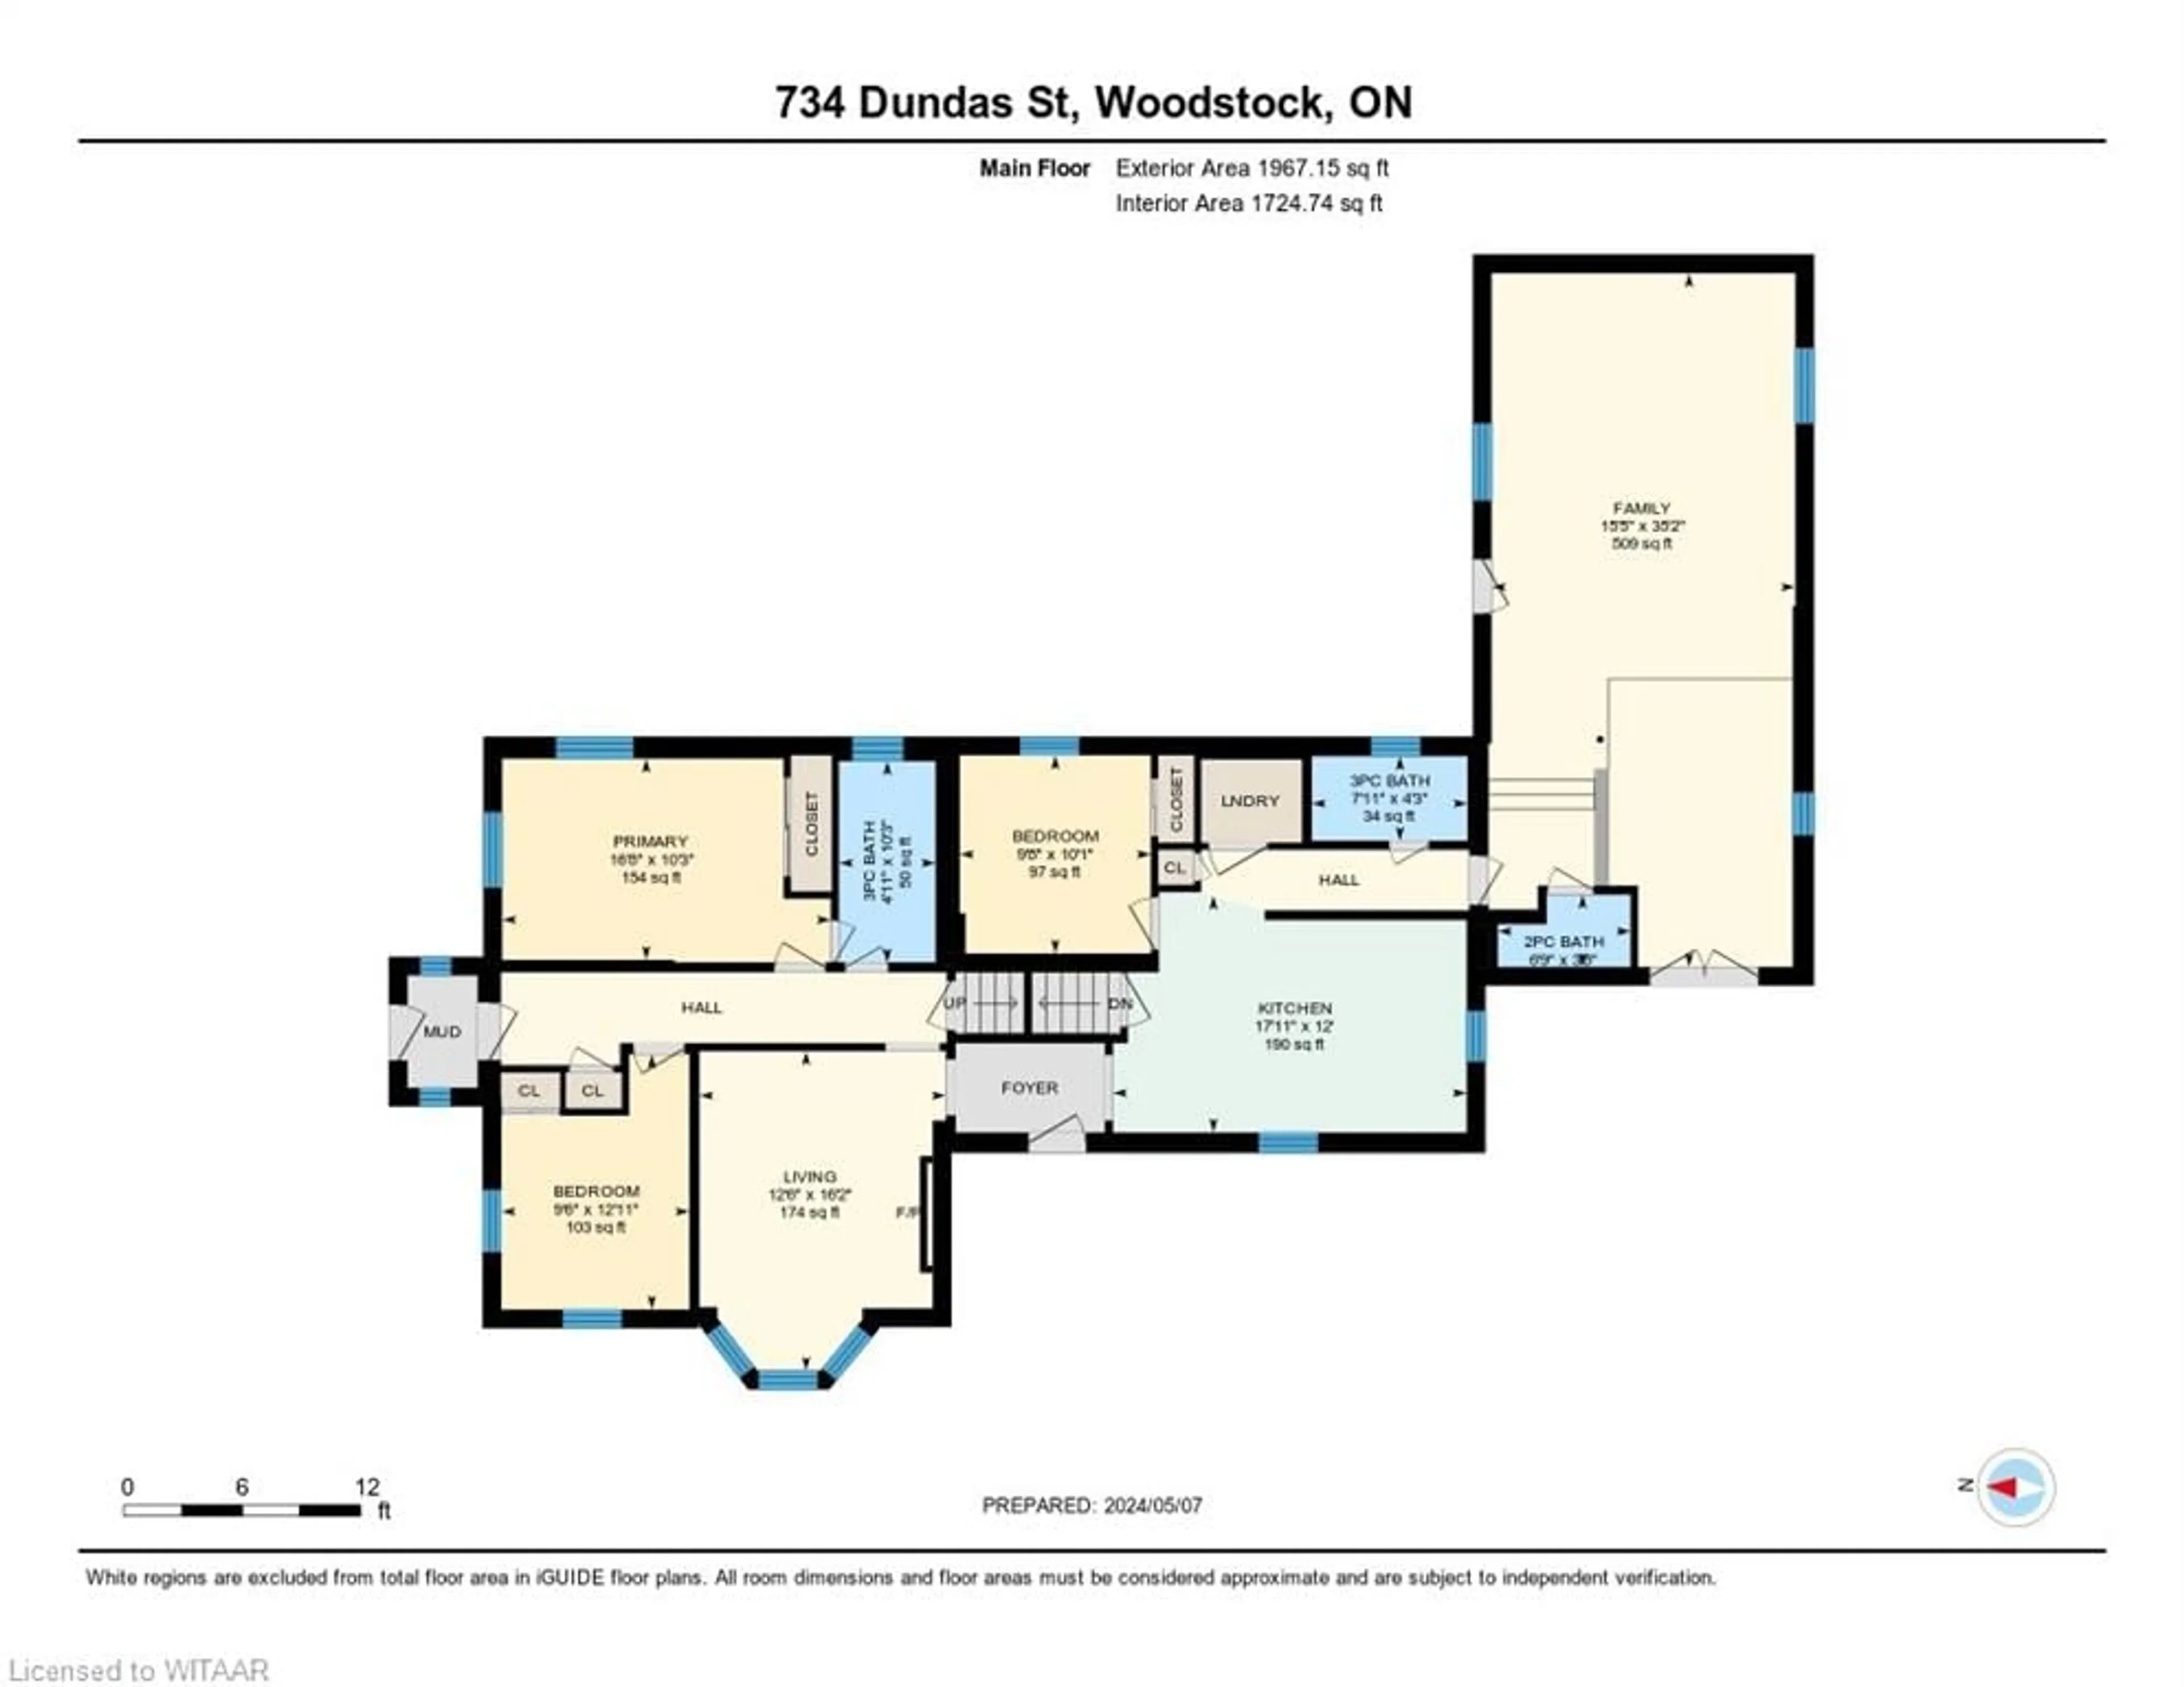 Floor plan for 734 Dundas St, Woodstock Ontario N4S 1E9